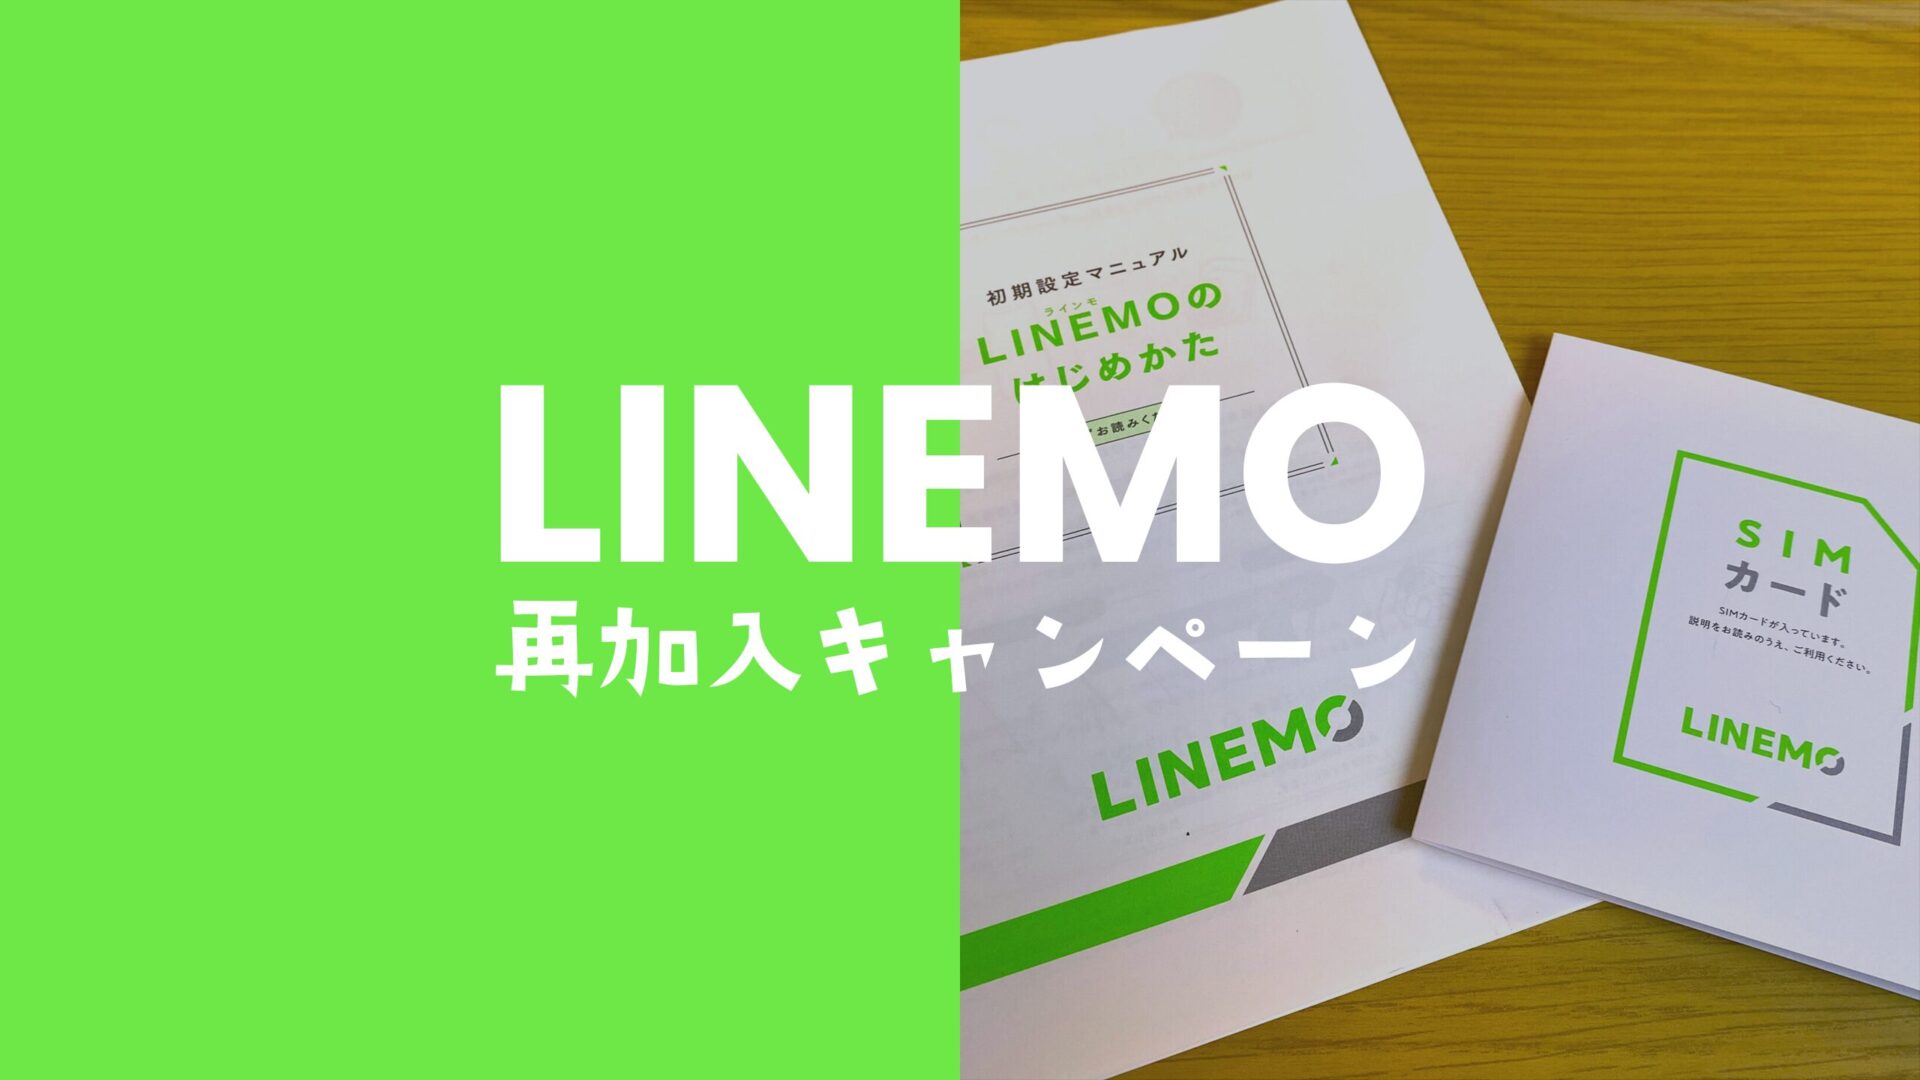 LINEMO(ラインモ)で再契約向けキャンペーンを開催中。再加入の条件やいつまで開催？のサムネイル画像